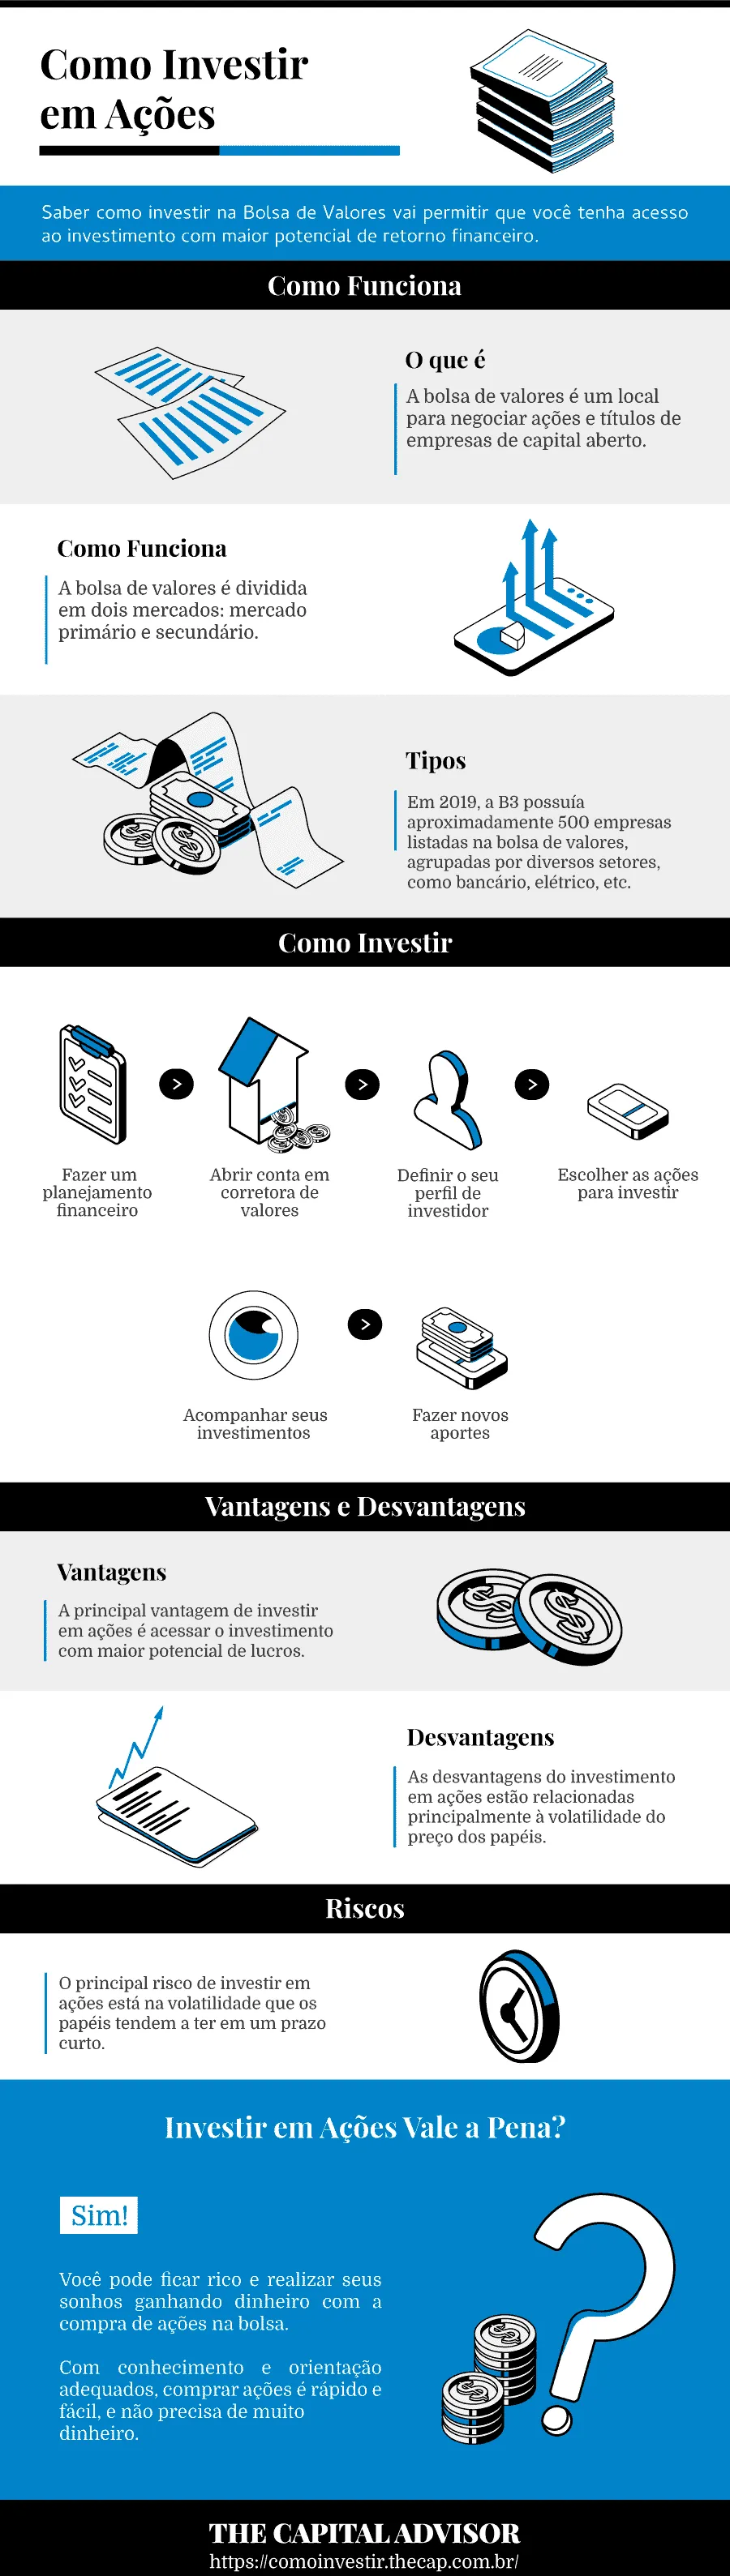 Infográfico: como investir em ações